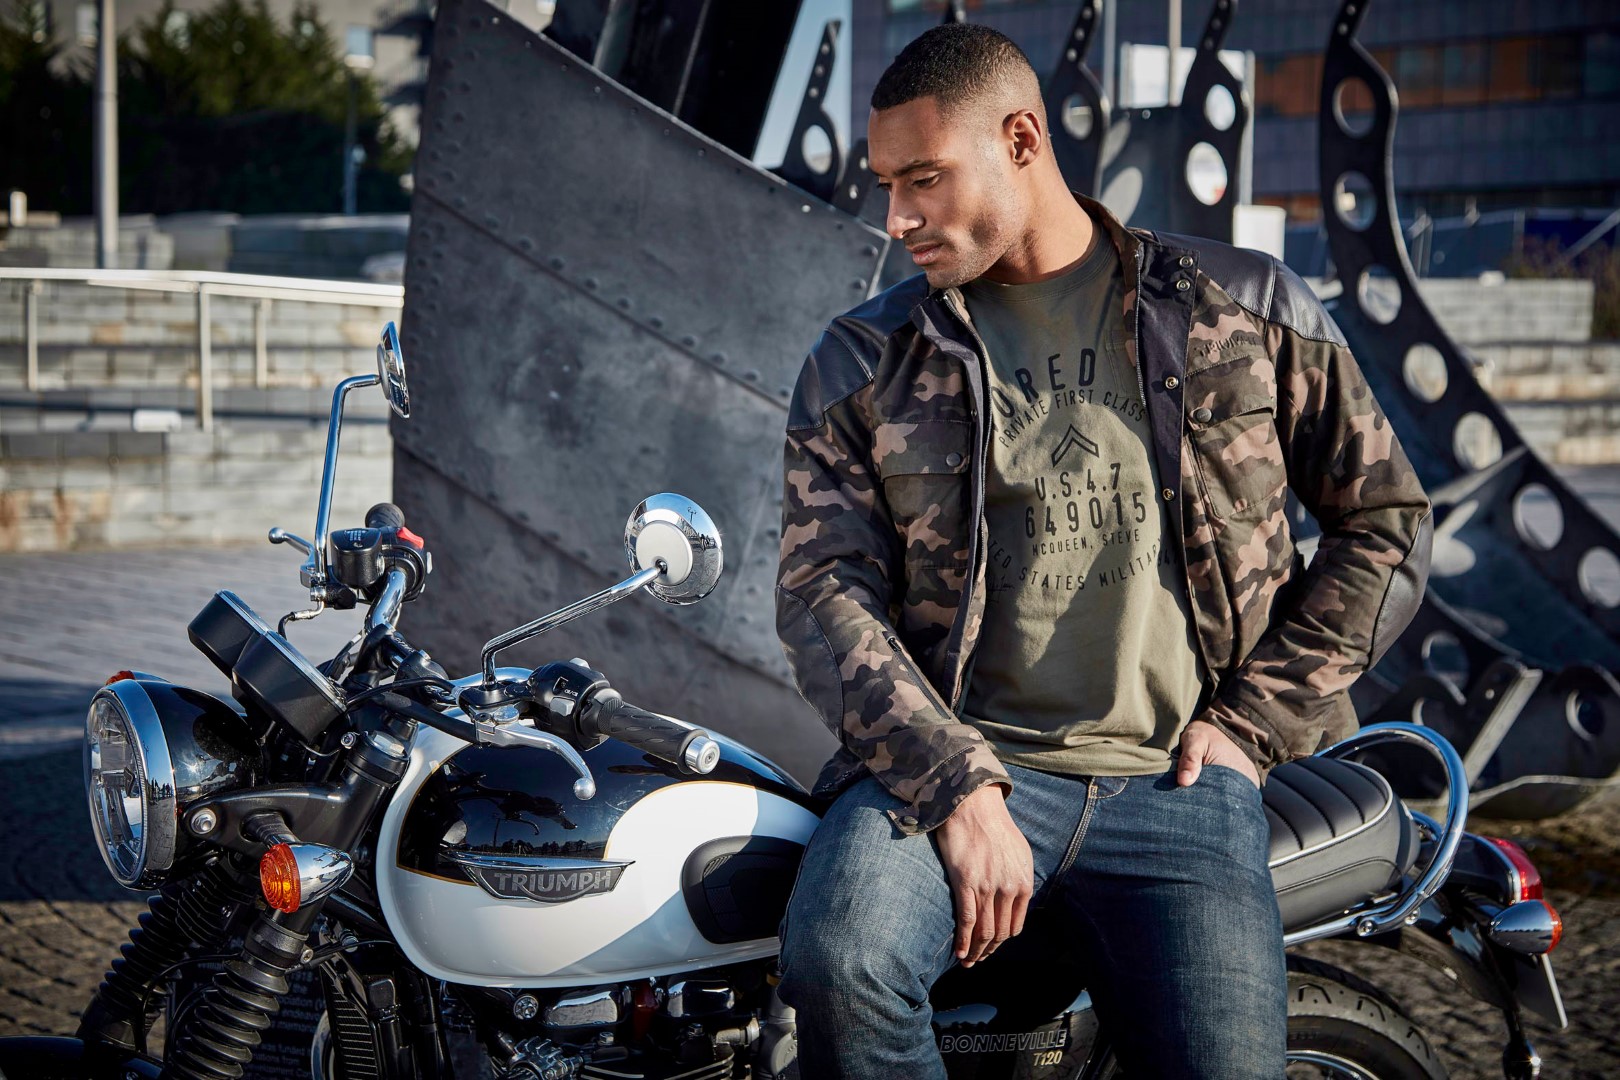 Triumph Motorcycles abbigliamento: la nuova McQueen collection, le foto